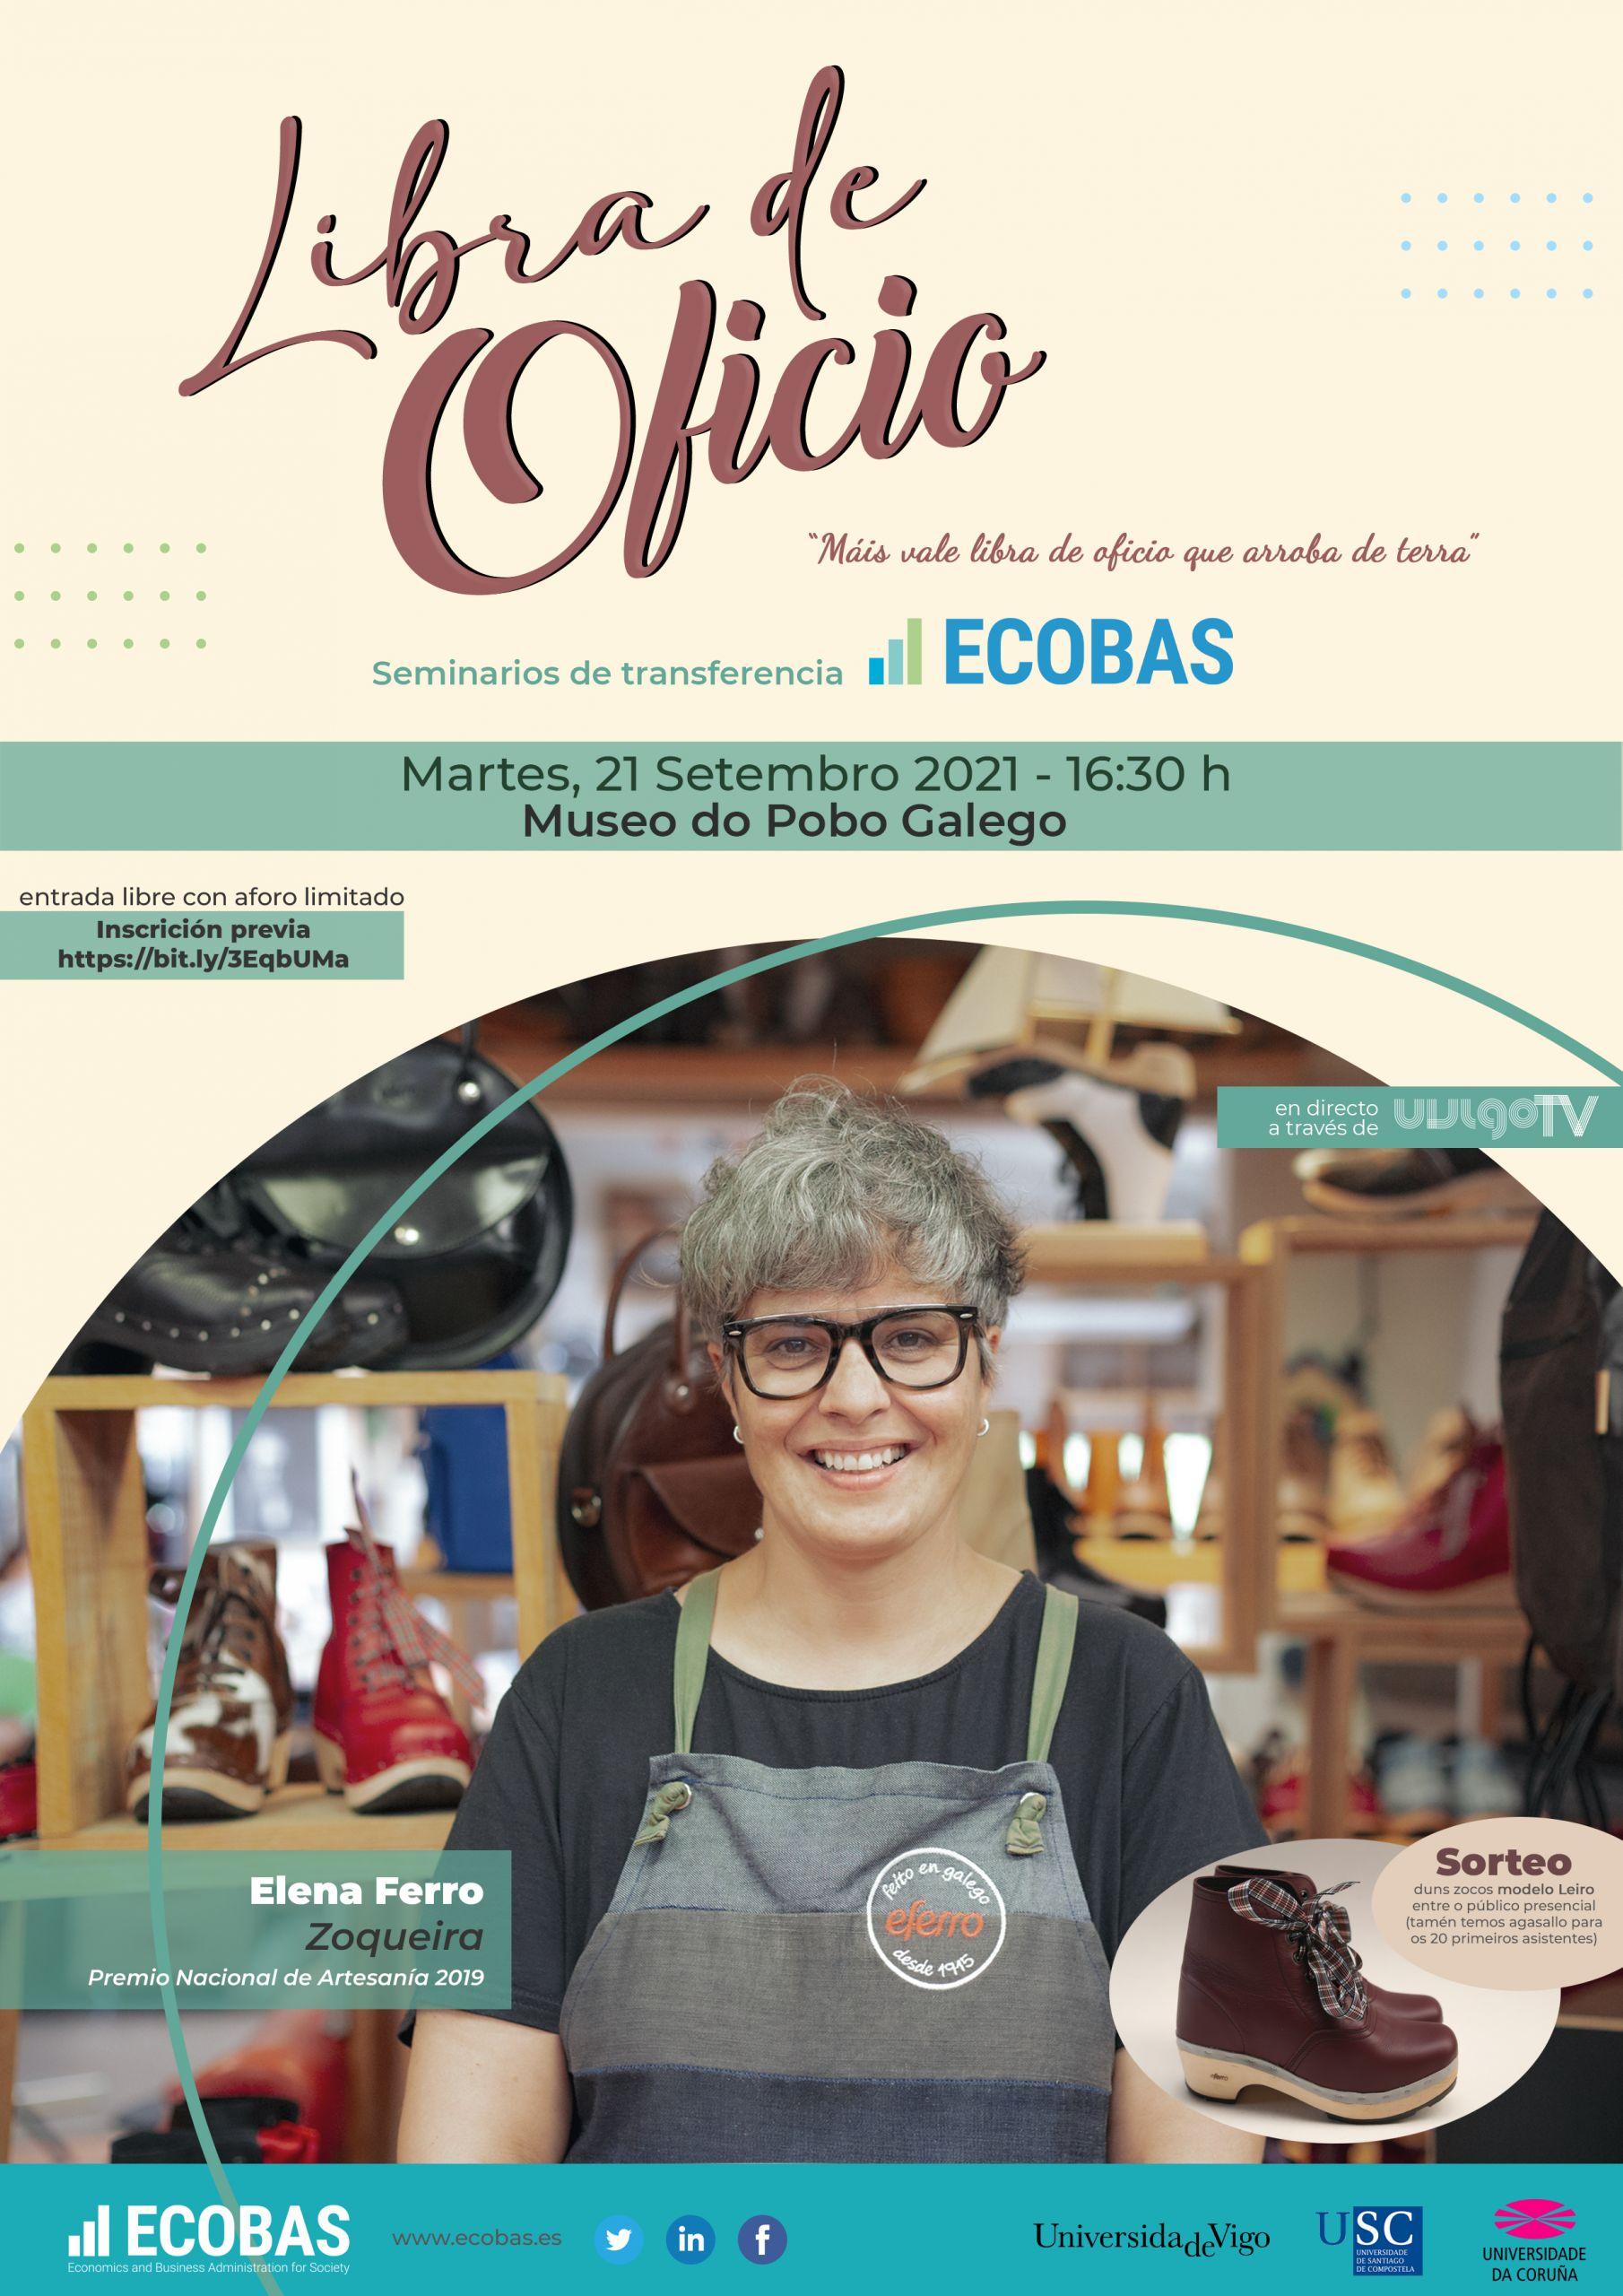 Cartel del seminario Libra de Oficio protagonizado por Elena Ferro